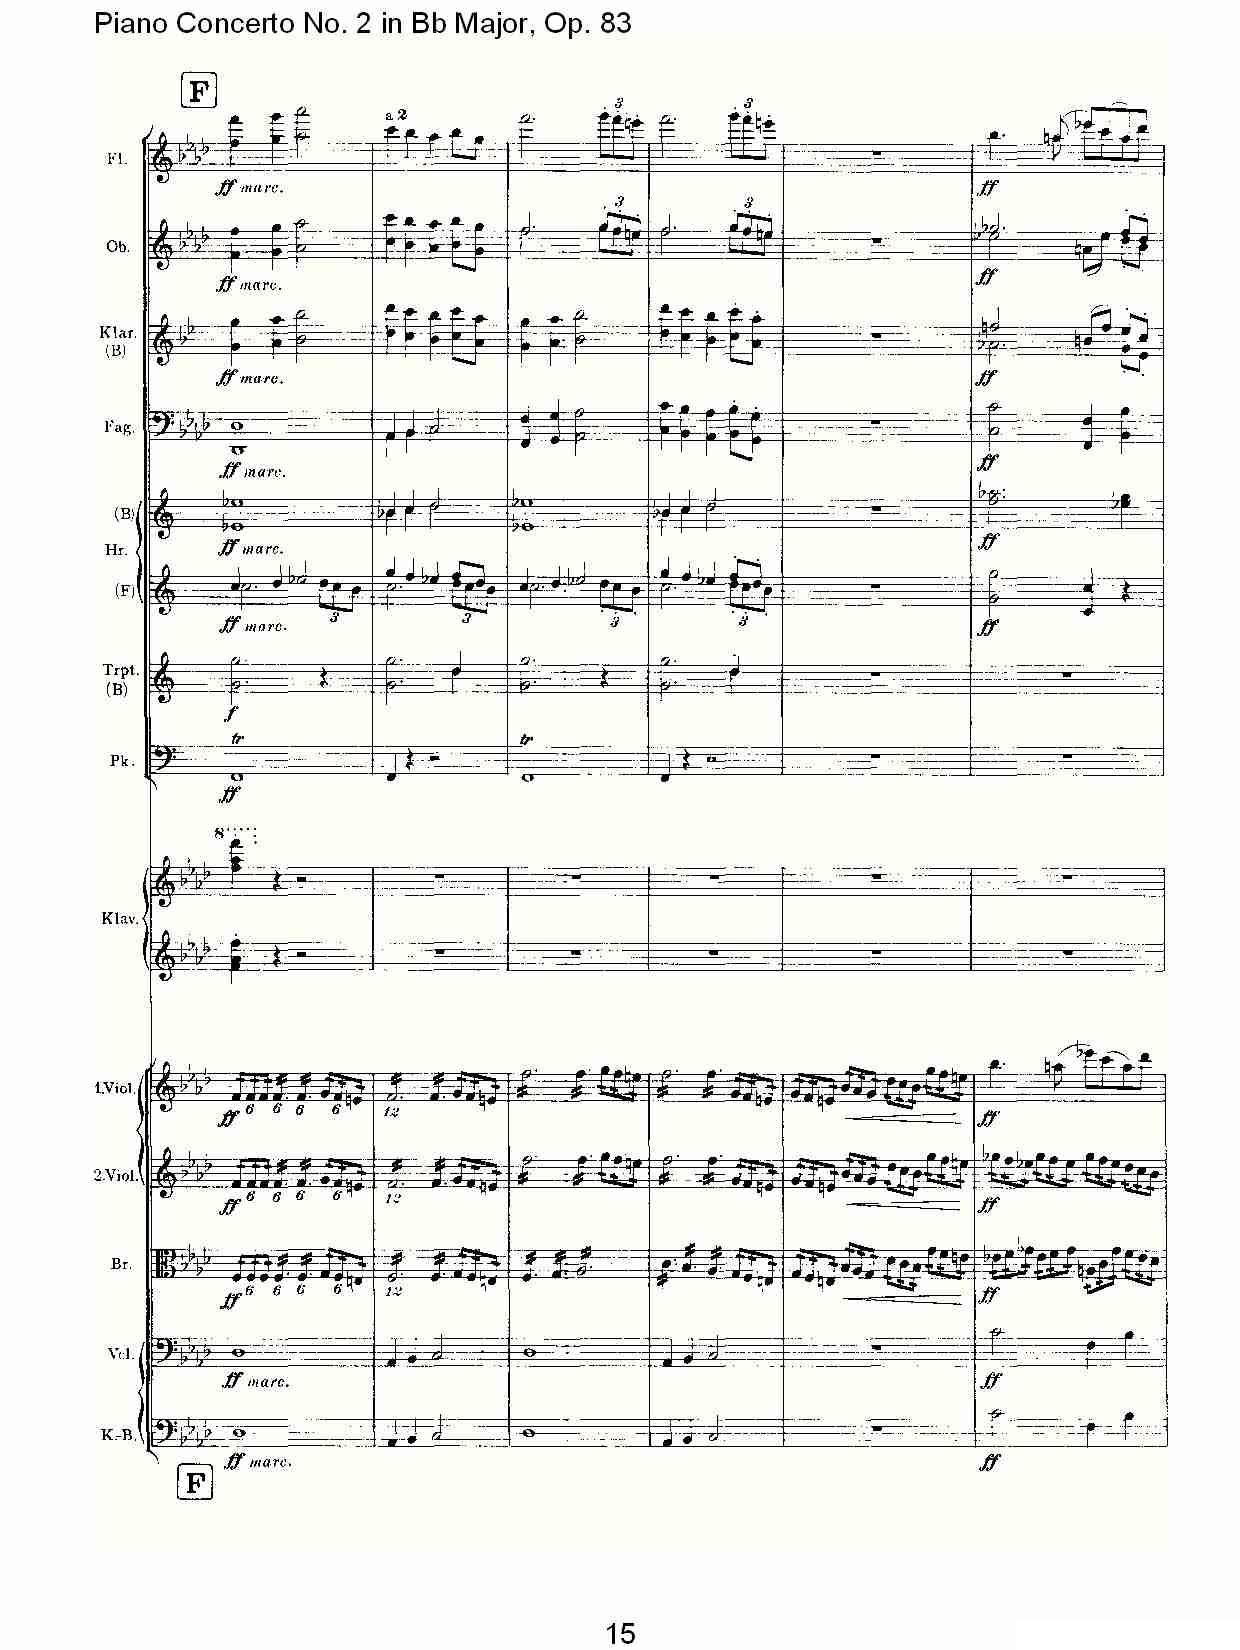 Bb大调钢琴第二协奏曲, Op.83第一乐章（一）钢琴曲谱（图16）